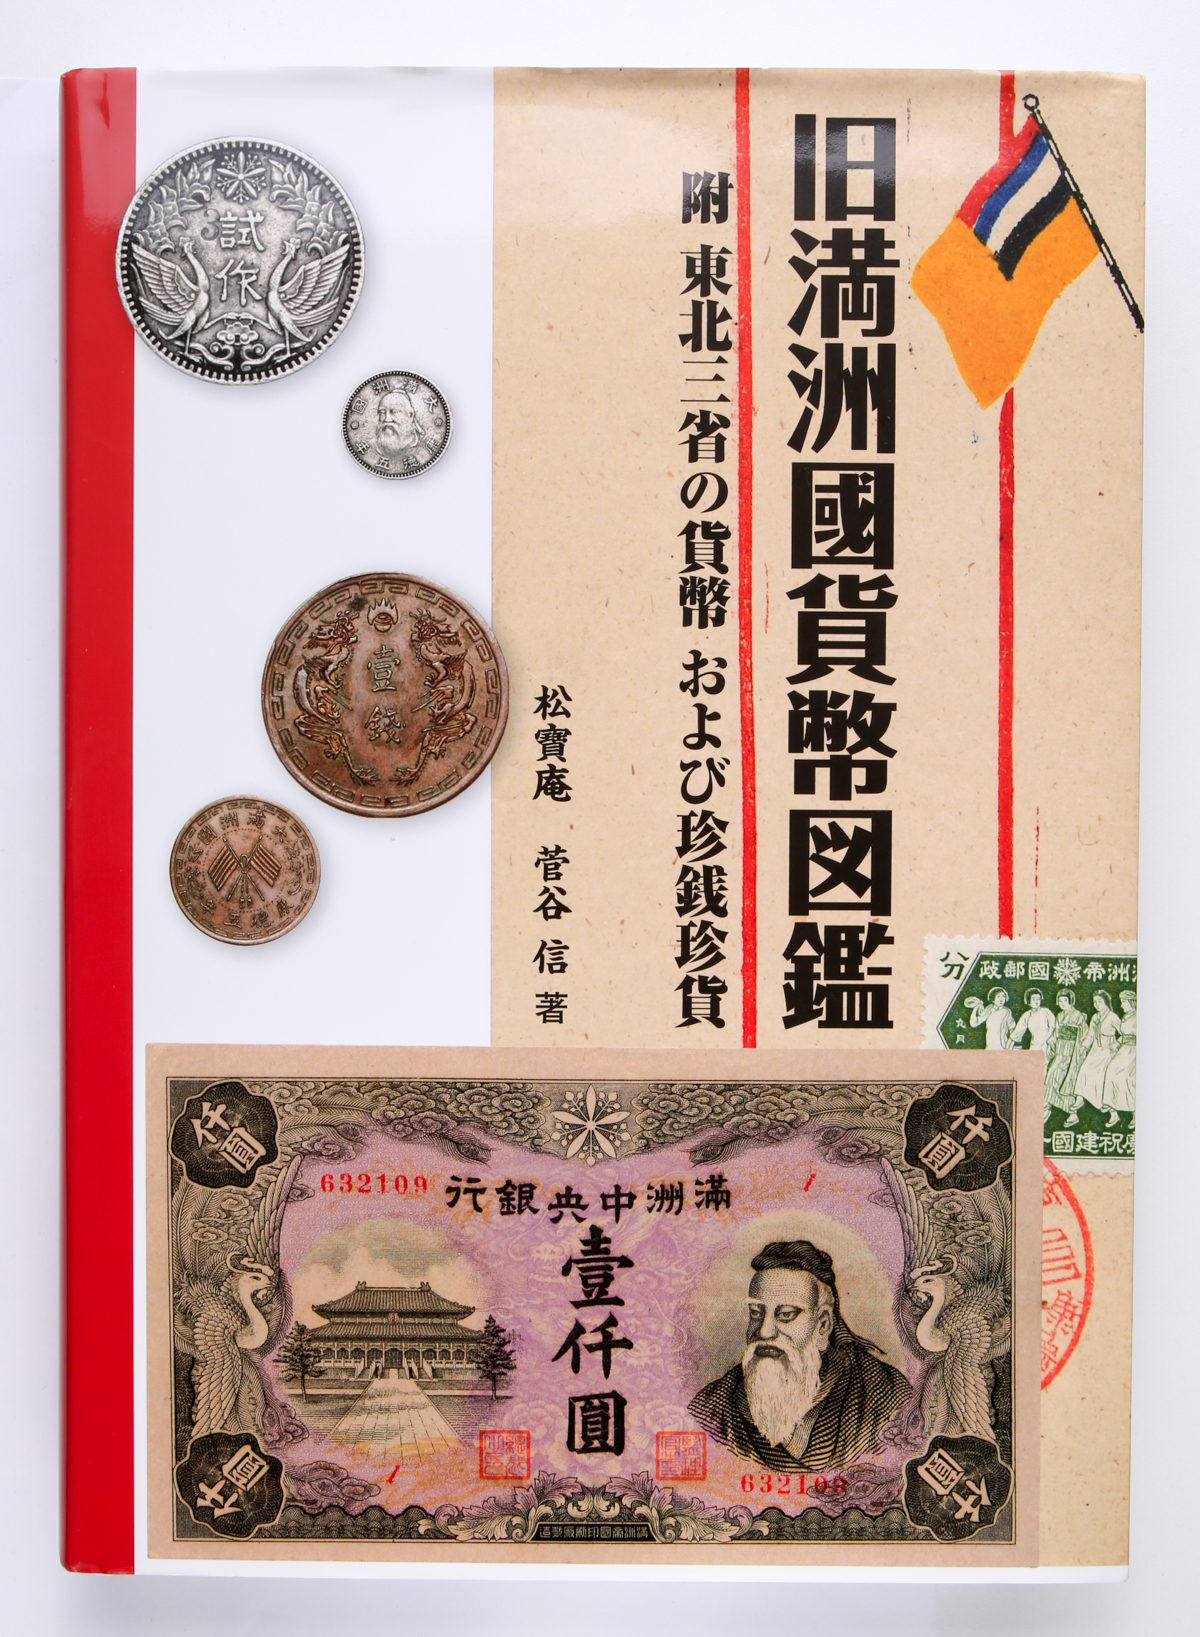 貨幣博物館 | Books 書籍 『旧満州国貨幣図鑑』松寶庵 菅谷 信著 2013年 中古美品